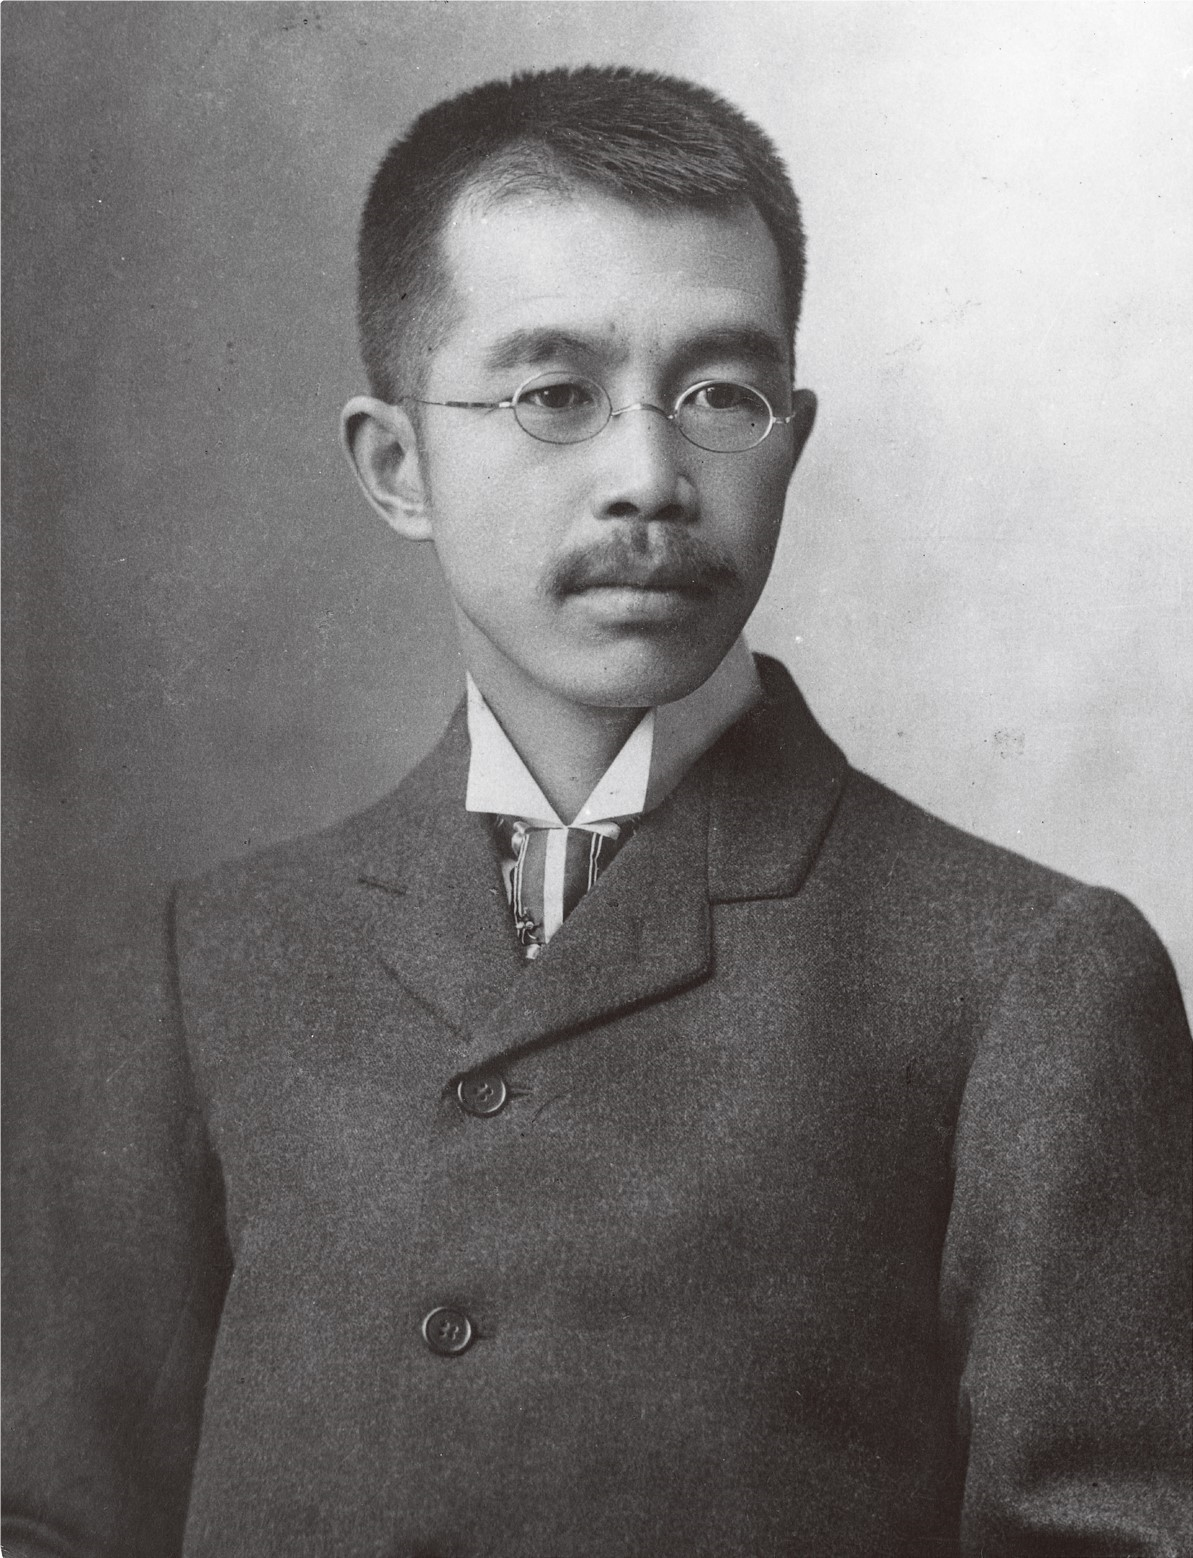 رجل الأعمال ومهندس الكهرباء الياباني "ناميهي أودايرا" مؤسس شركة هيتاتشي 